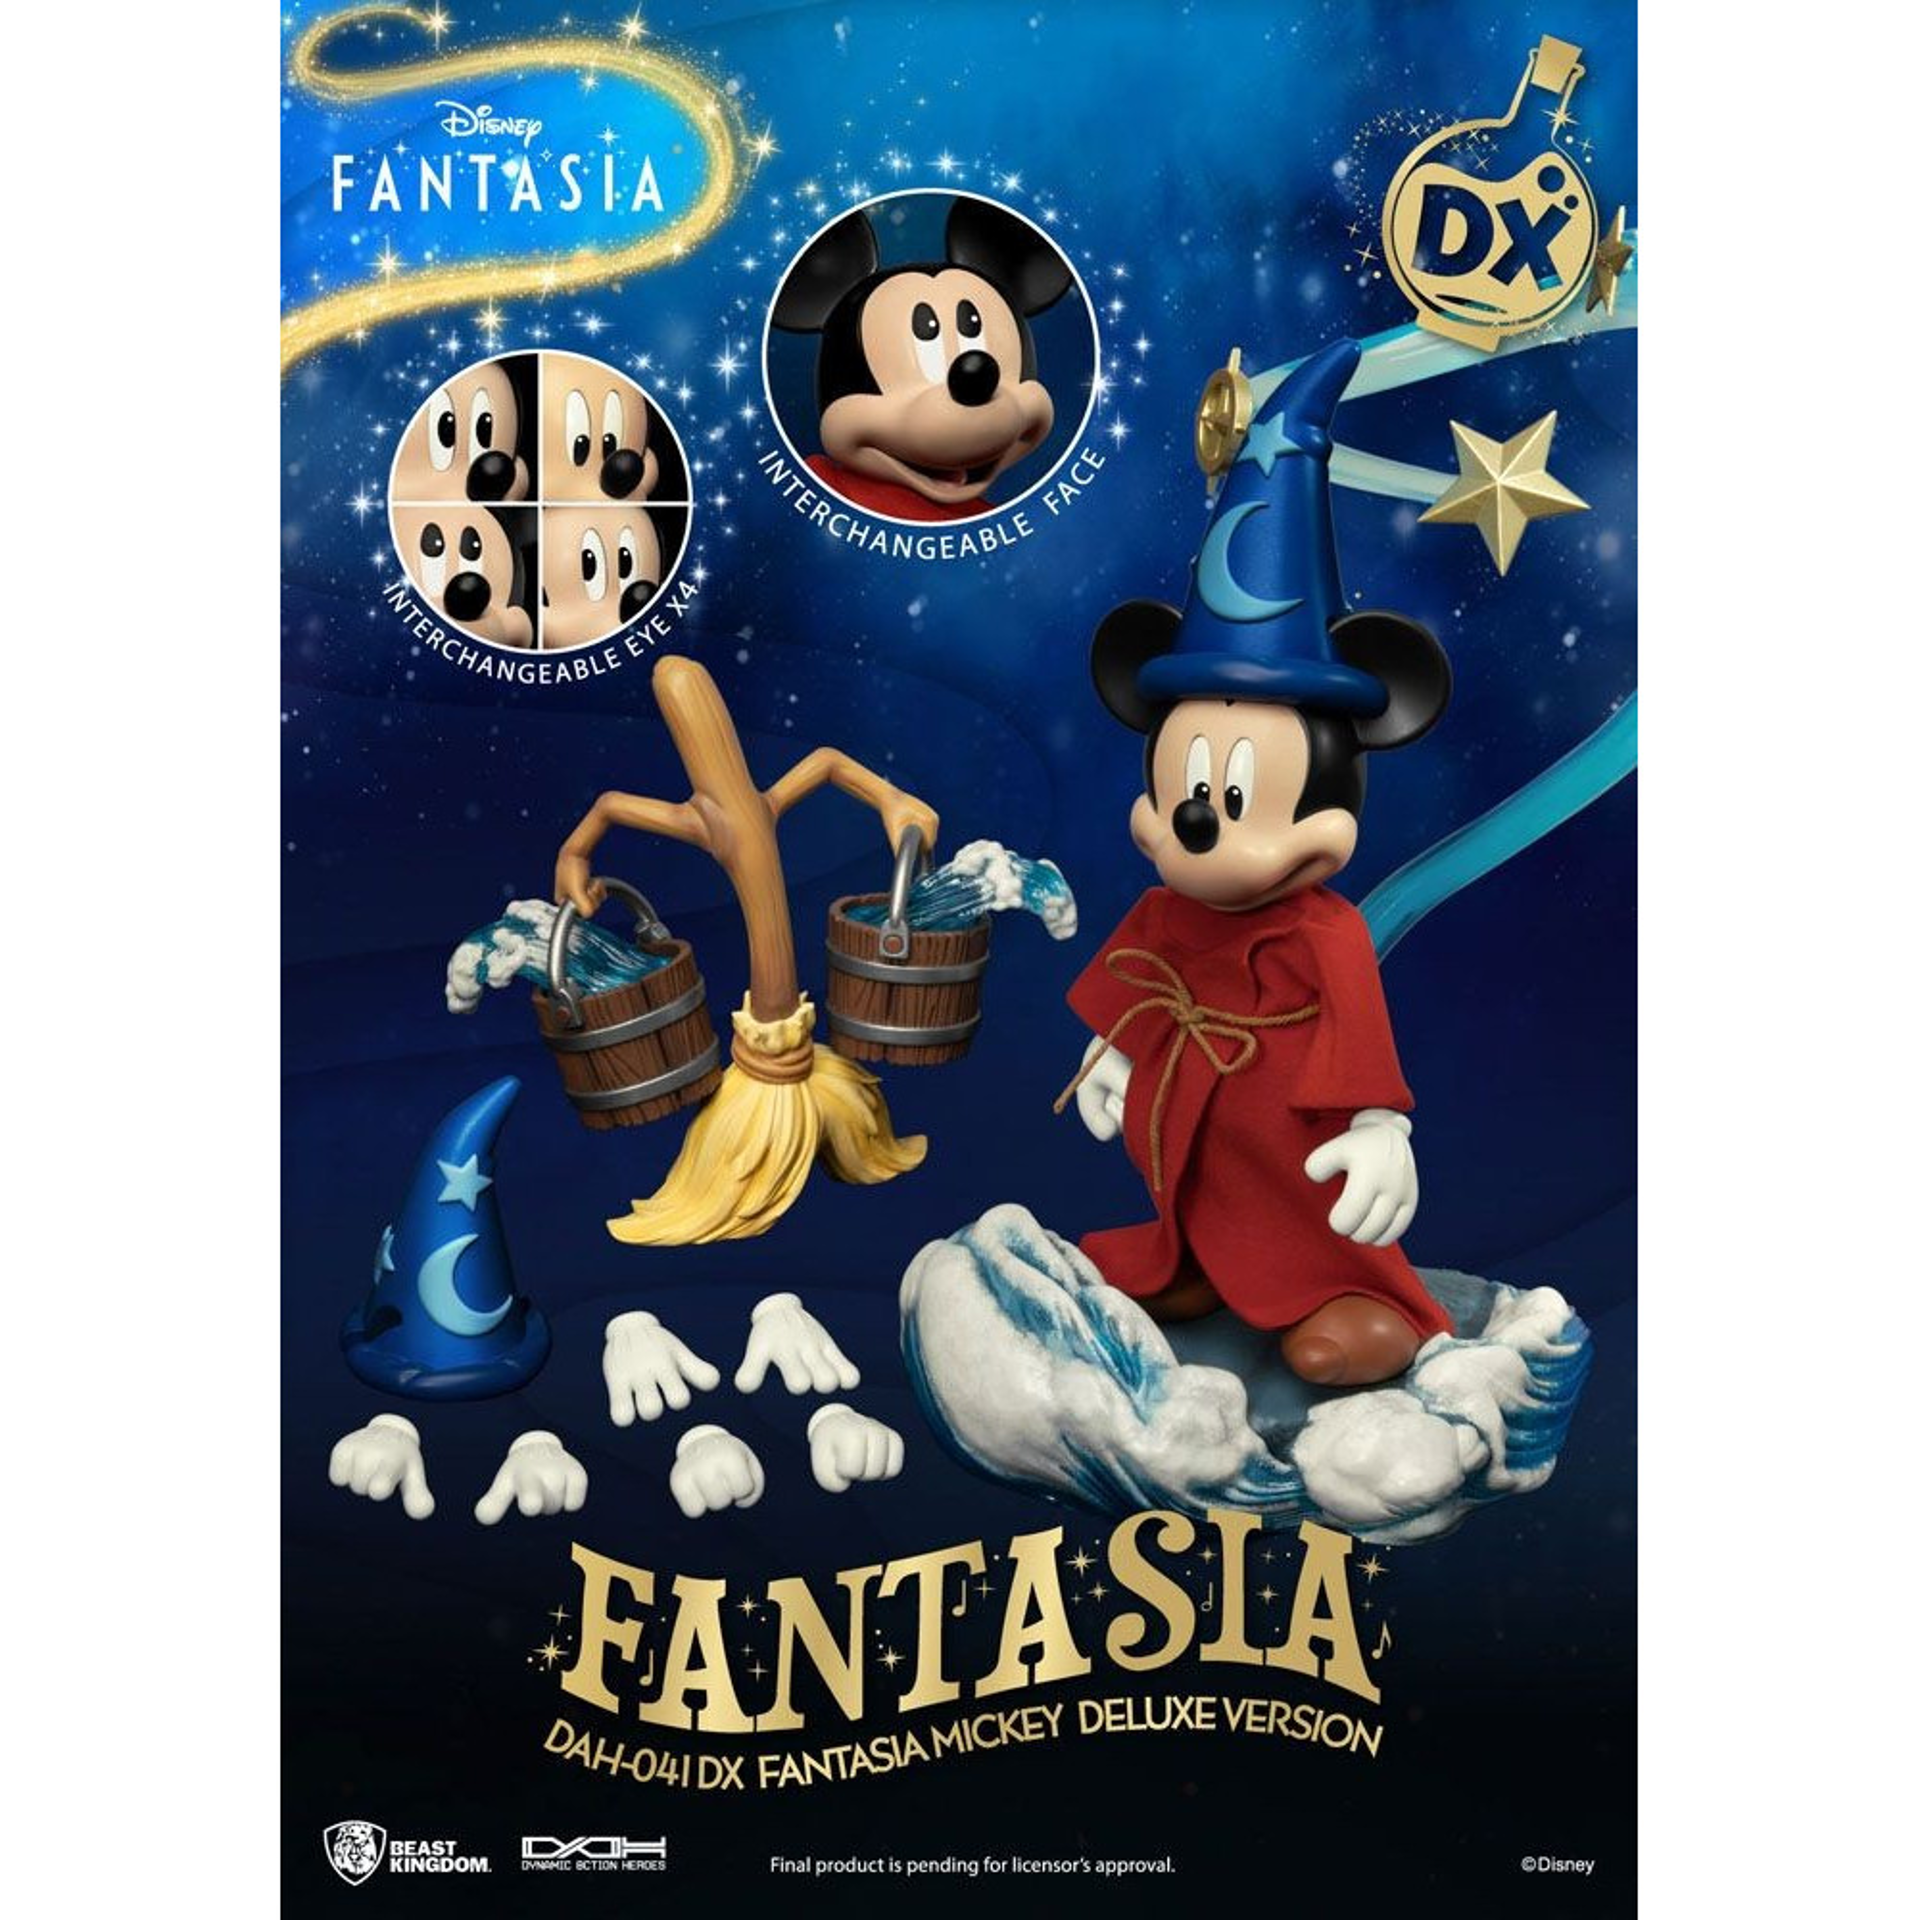 Disney - DAH-041DX - Disney Classique - Mickey Fantasia Deluxe Version